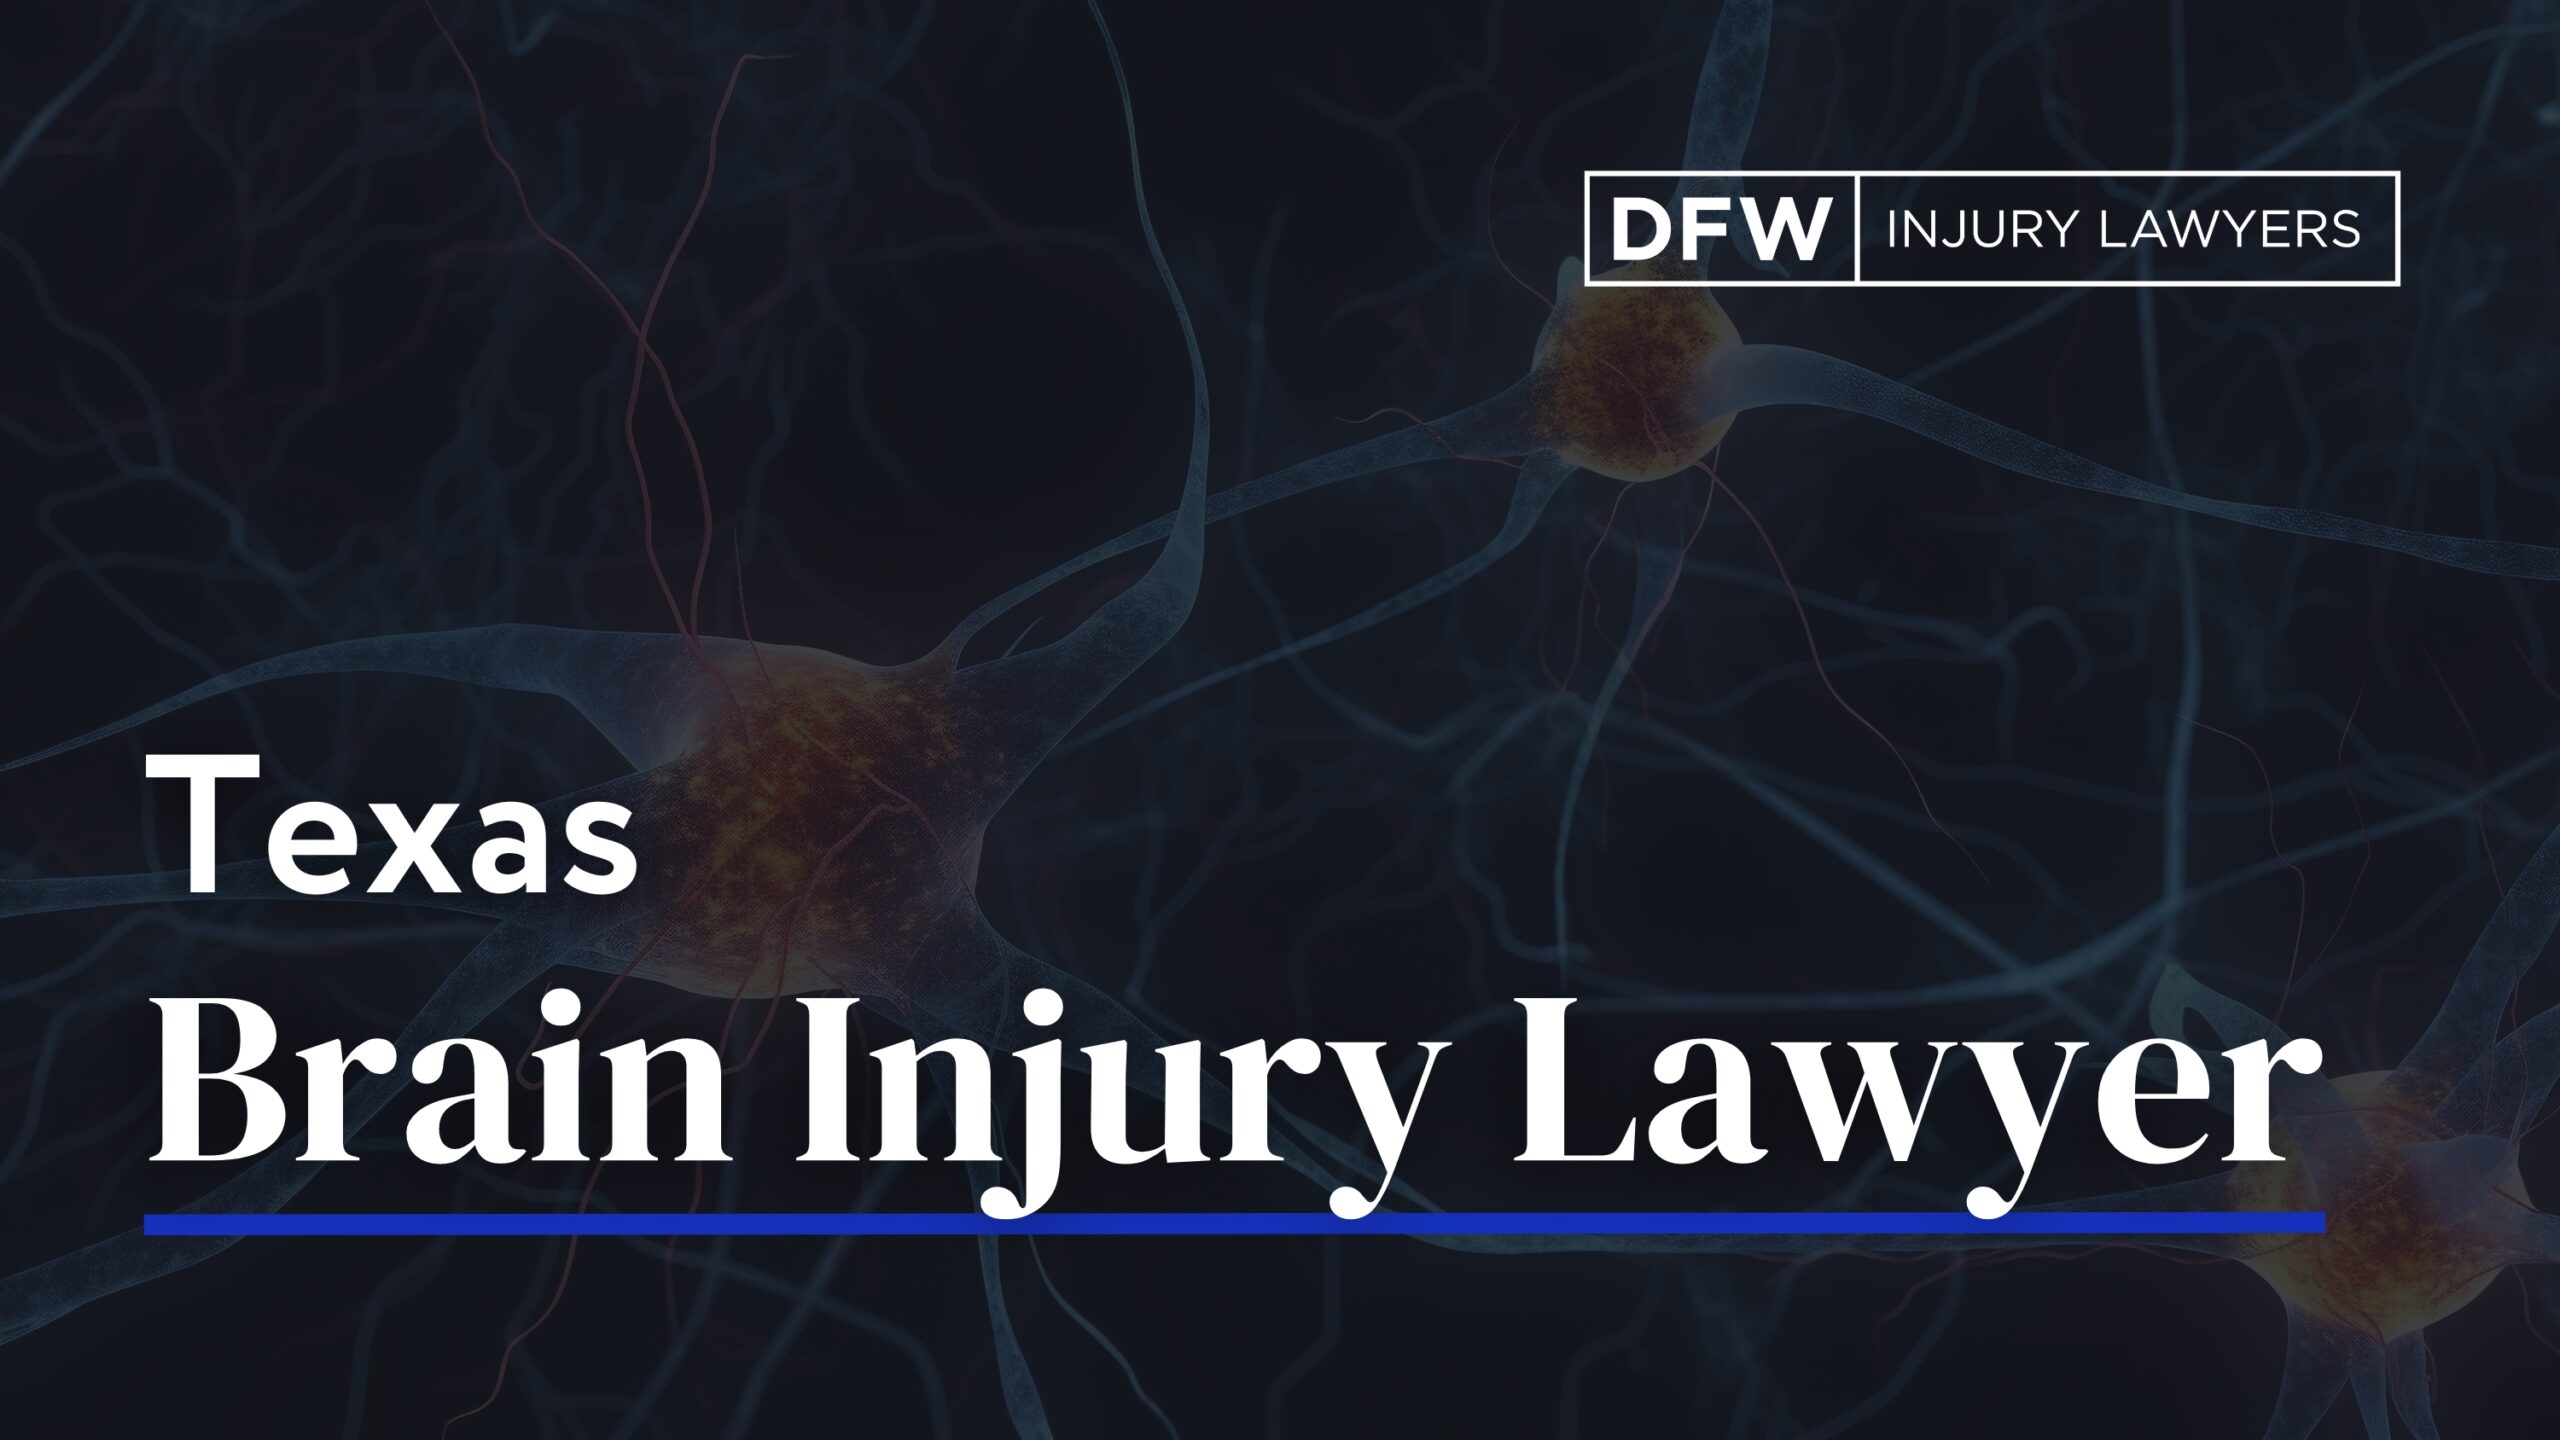 Texas Brain Injury Lawyer - DFW